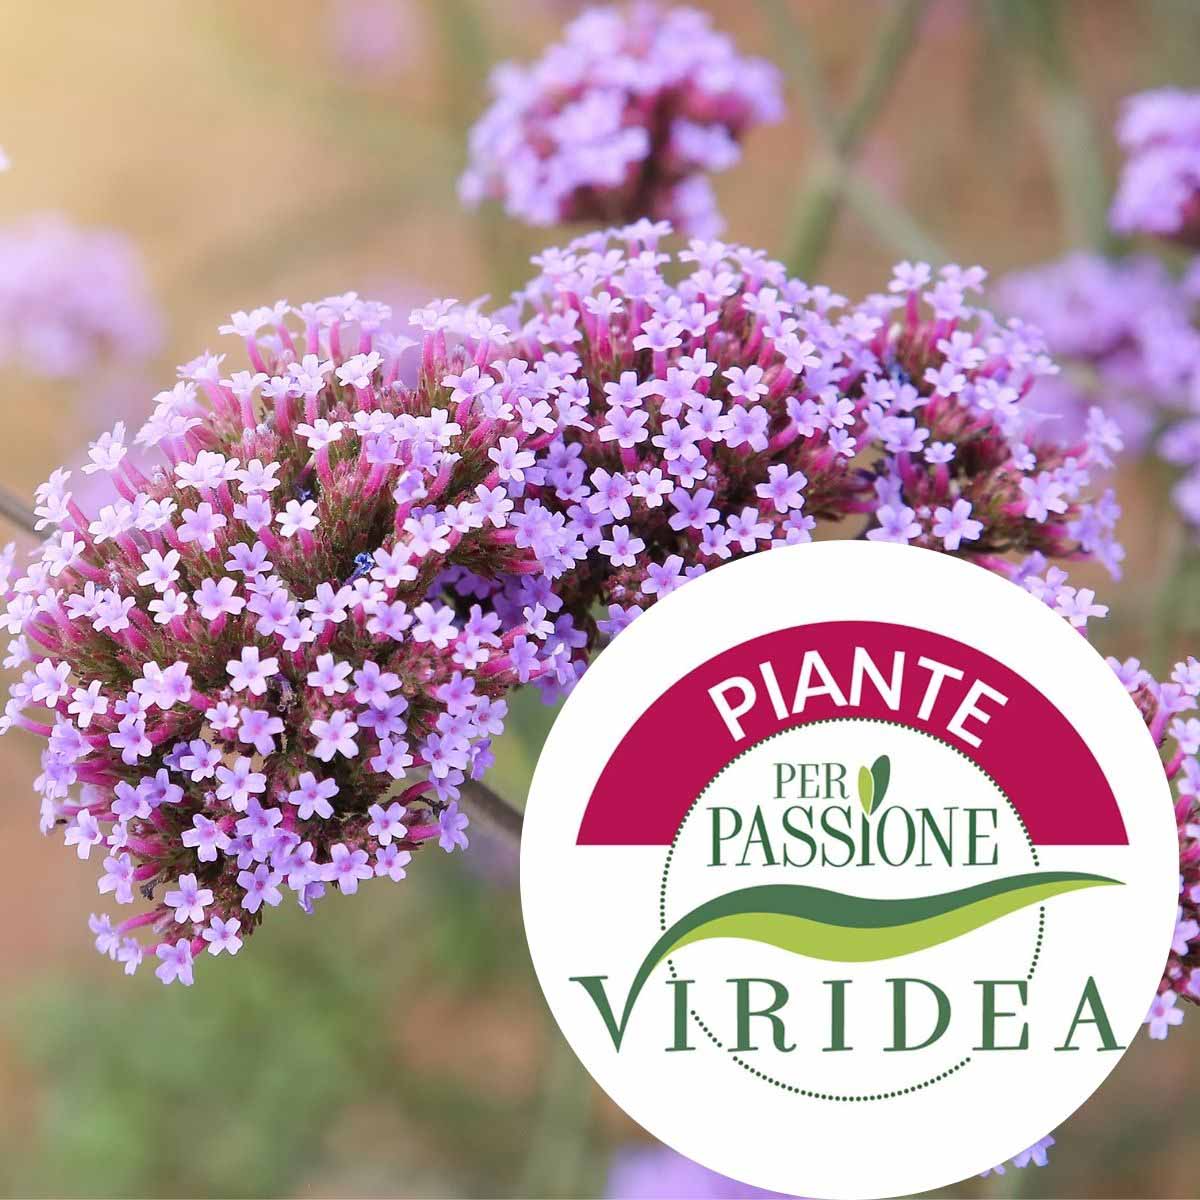 Linea Piante per Passione – Verbena in varietà